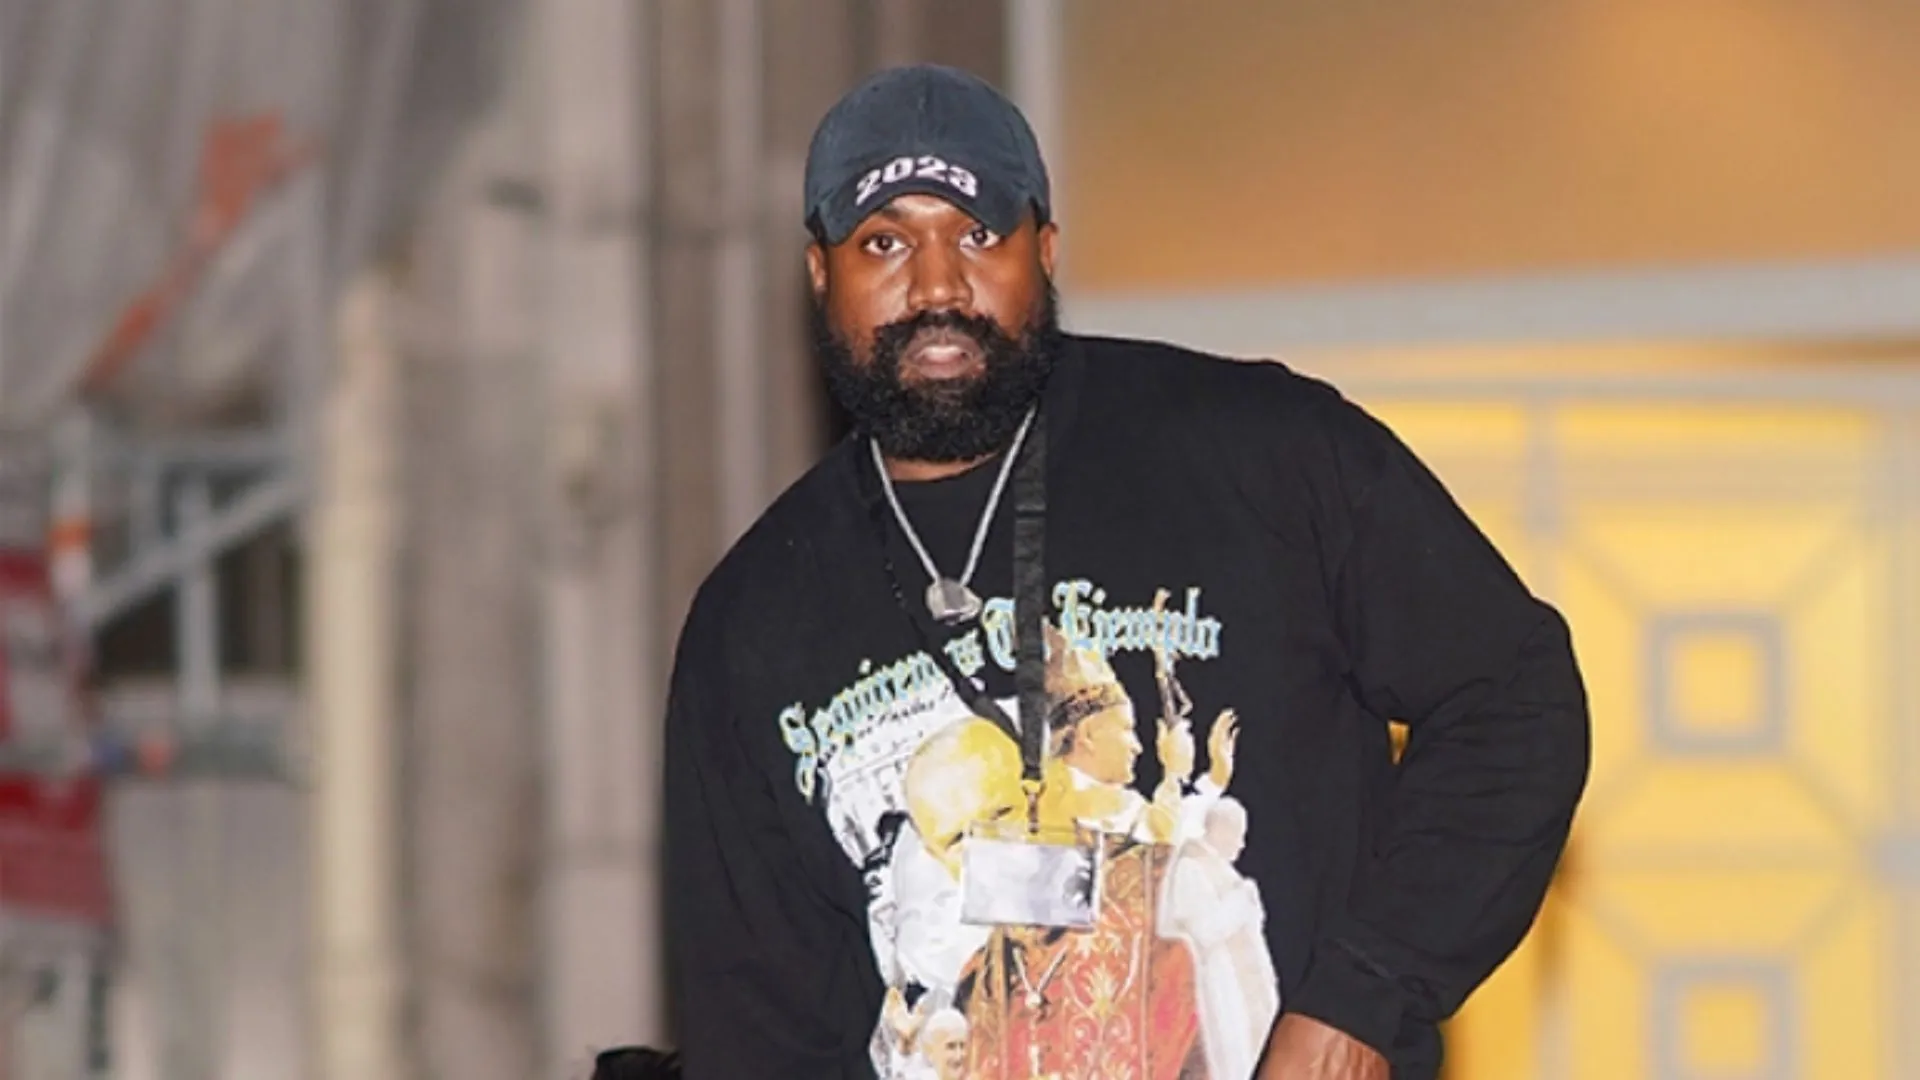 Kanye West Sweatshirt States ‘White Lives Matter’ Wears During Yeezy Paris Fashion Week Show